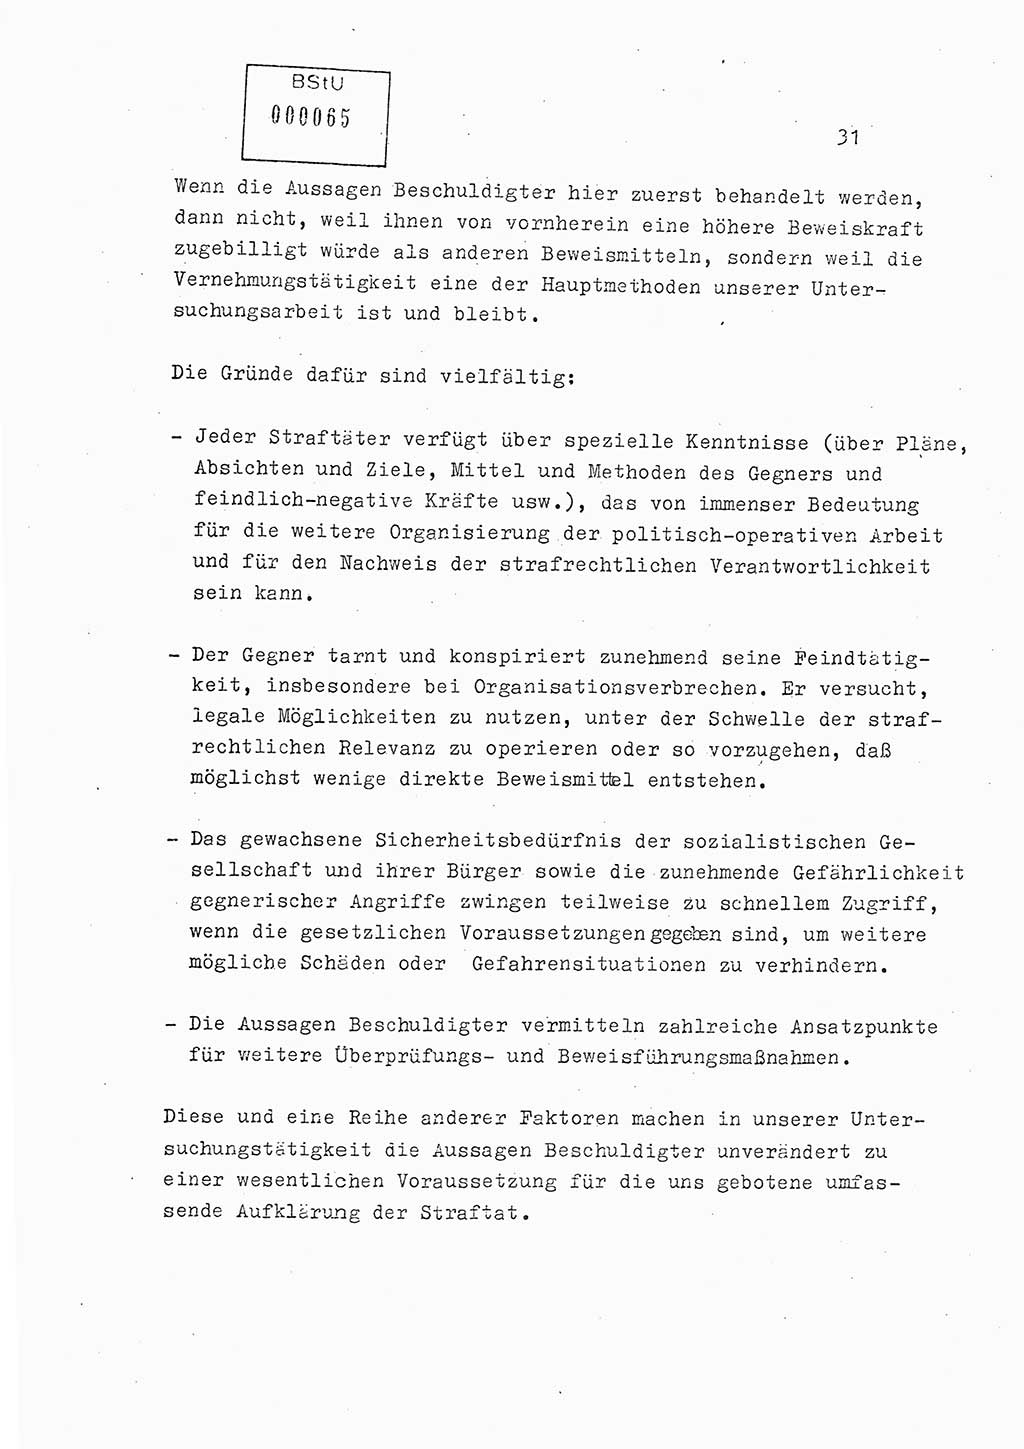 Lektion Ministerium für Staatssicherheit (MfS) [Deutsche Demokratische Republik (DDR)], Hauptabteilung (HA) Ⅸ, Berlin 1979, Seite 31 (Lekt. Bew.-Fü. EV MfS DDR HA Ⅸ 1979, S. 31)